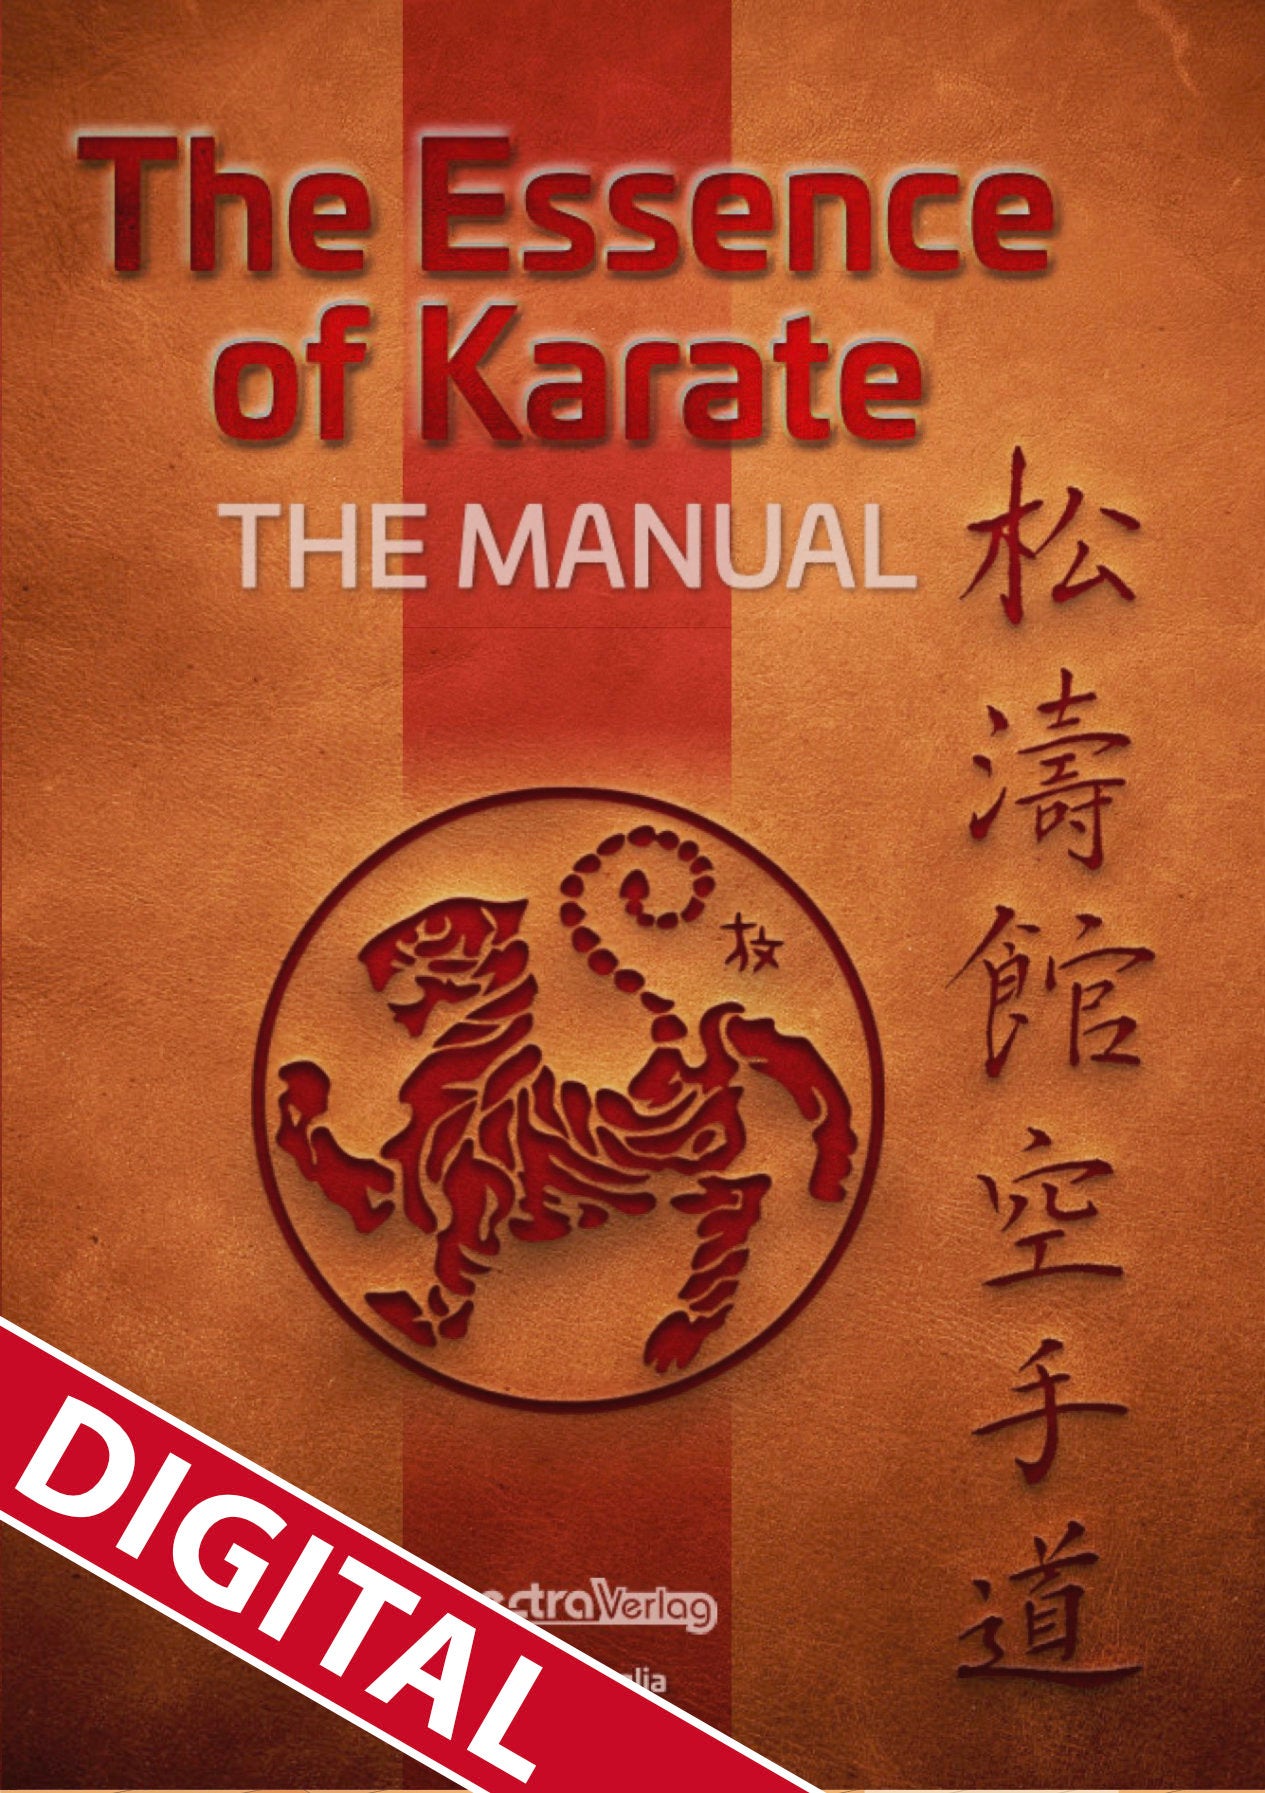 🇬🇧 Digital-Buch | Die Karate-Essenz